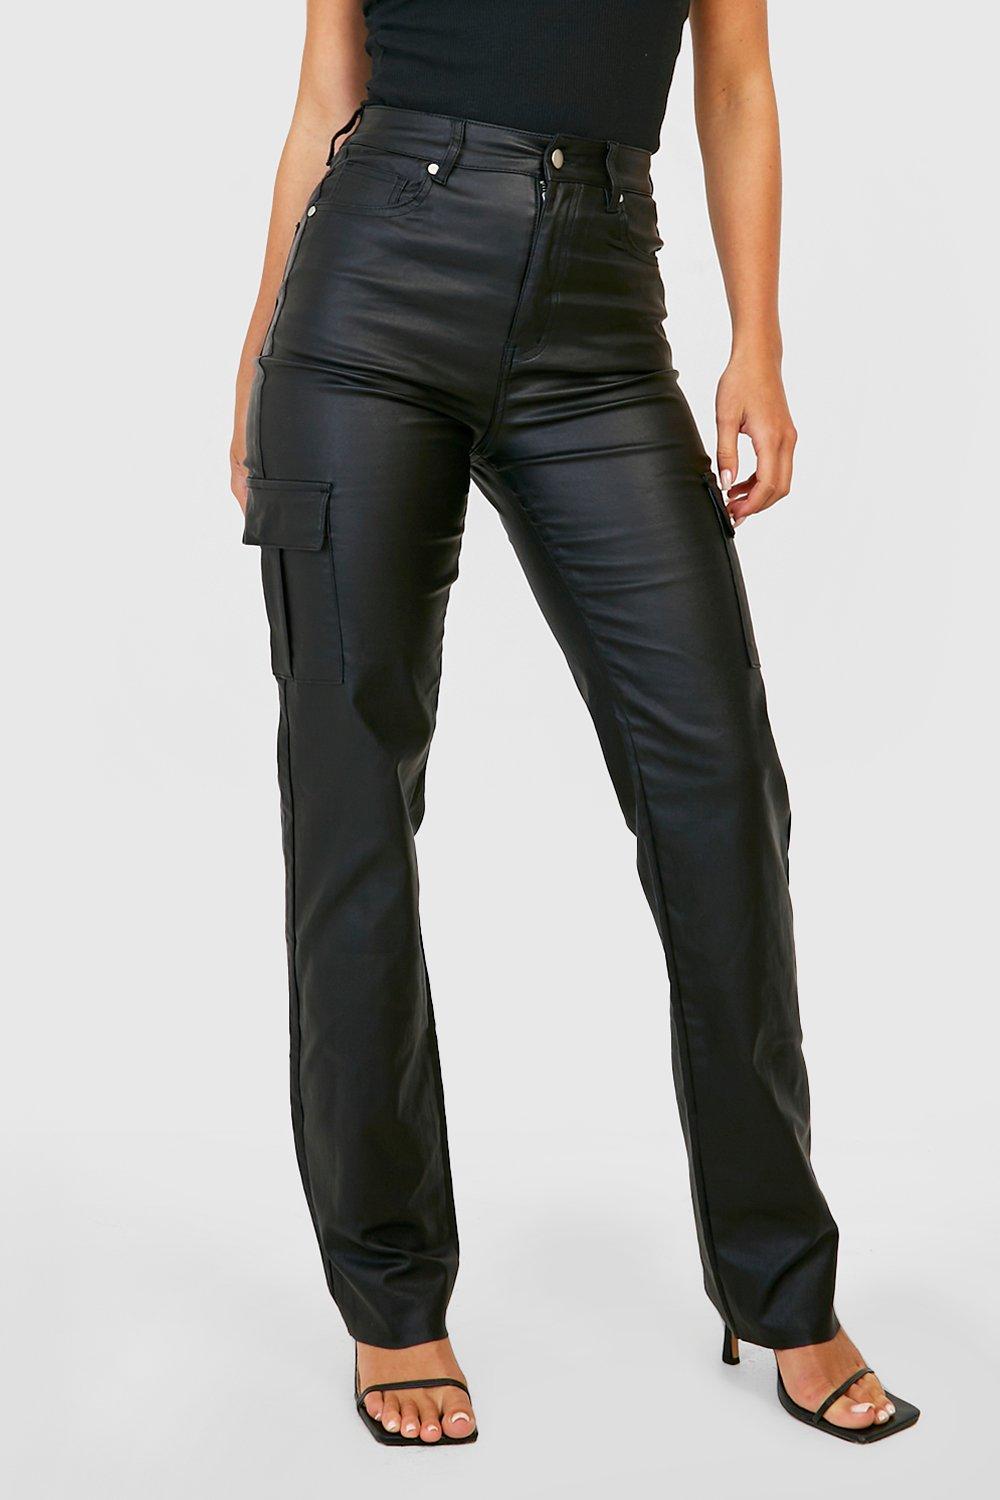 https://media.boohoo.com/i/boohoo/gzz17391_black_xl_3/female-black-pu-coated-denim-high-waisted-cargo-jeans